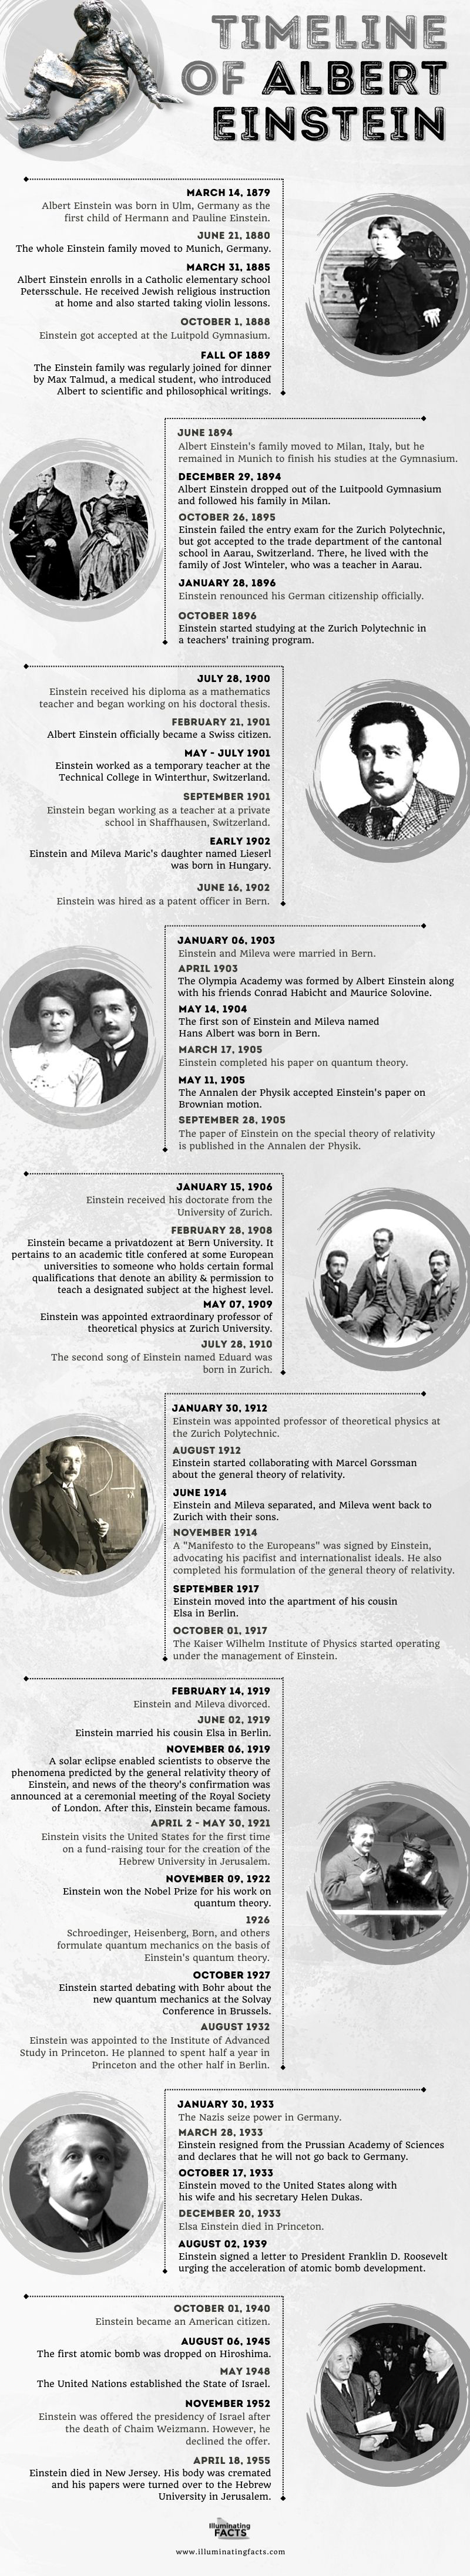 Timeline of Albert Einstein